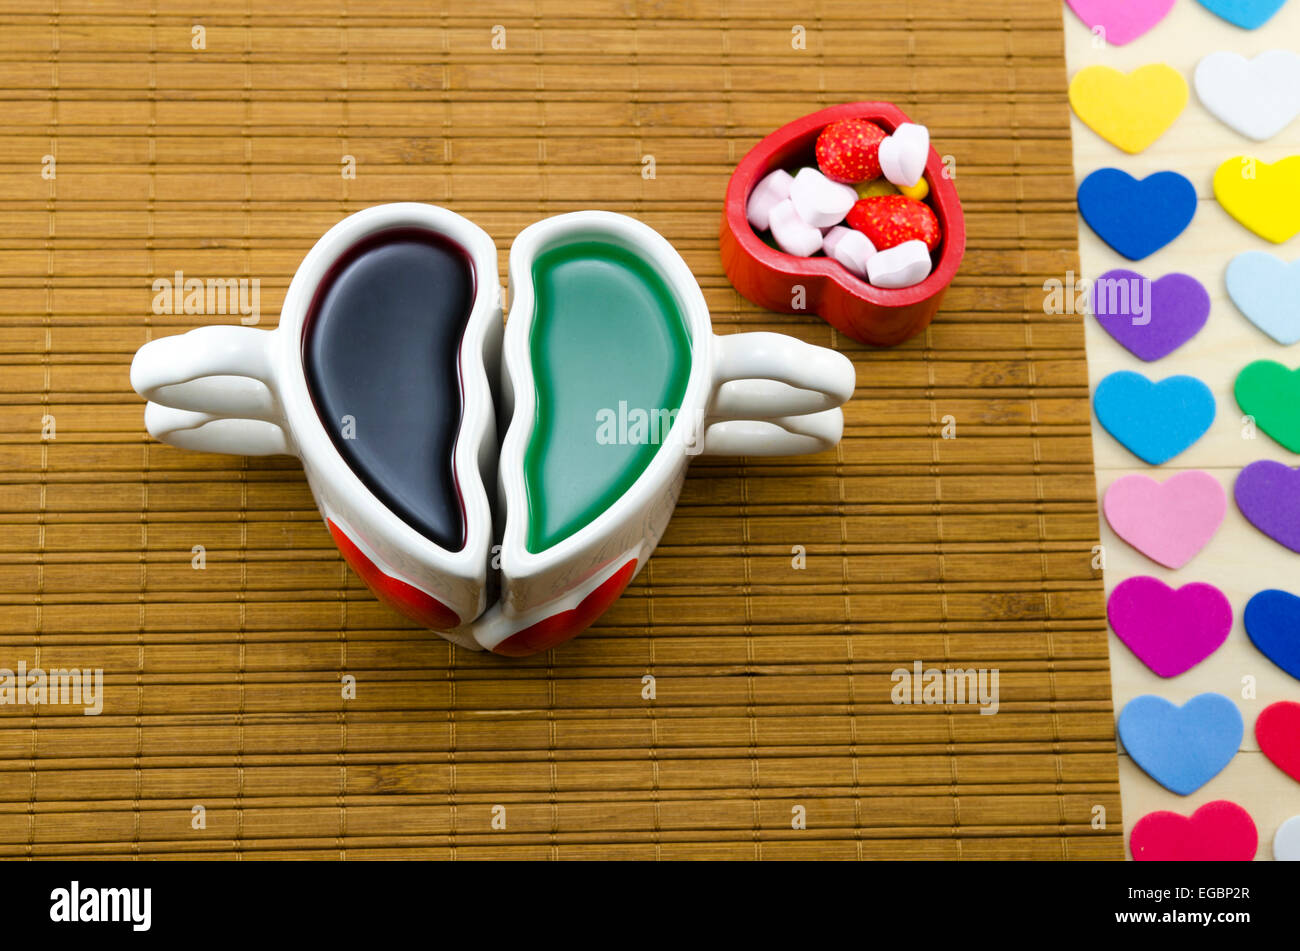 Vari tipi di colorati cuore di simboli su una superficie in legno Foto Stock